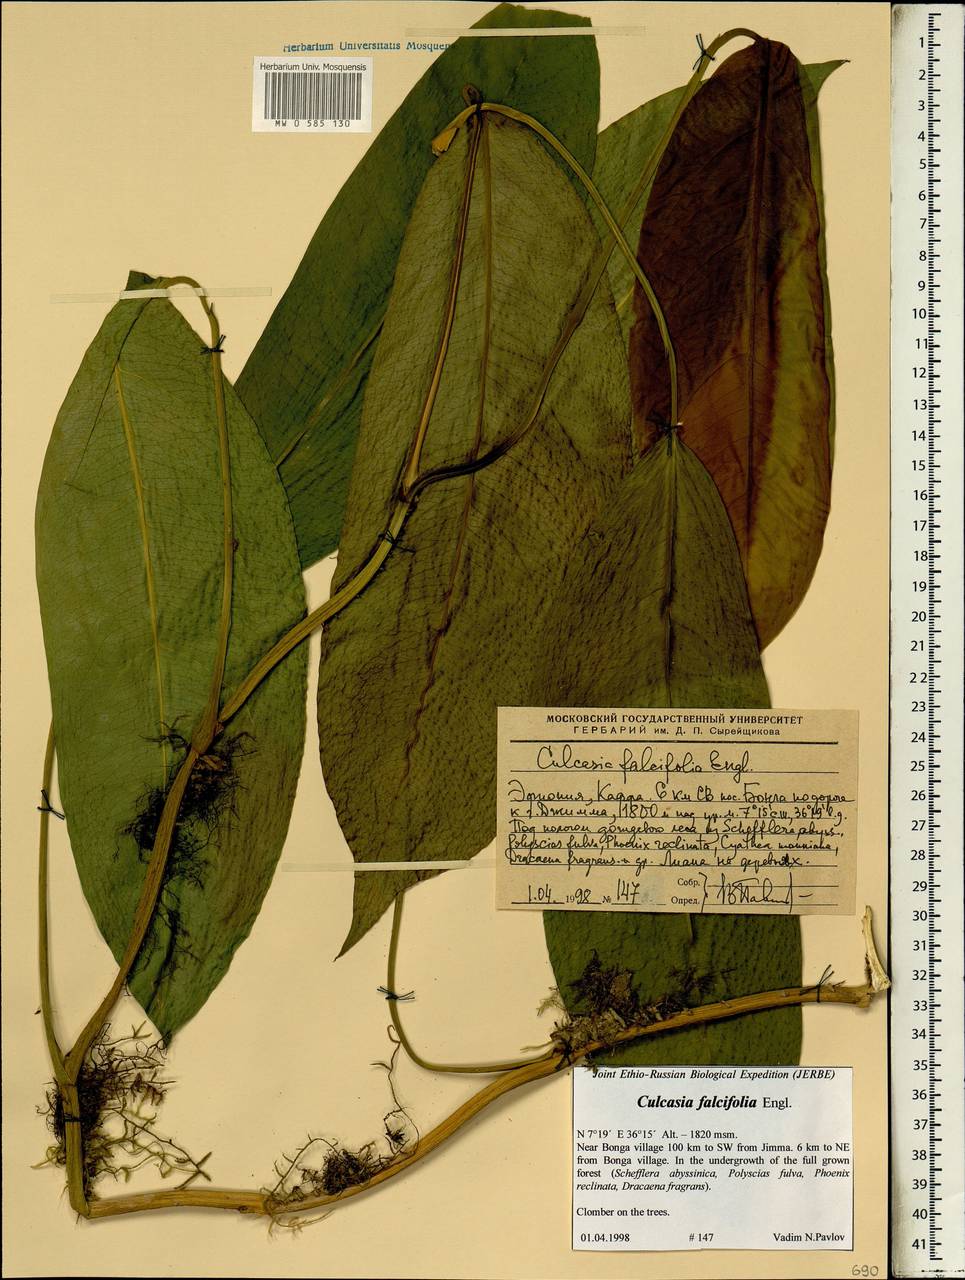 Culcasia falcifolia Engl., Africa (AFR) (Ethiopia)